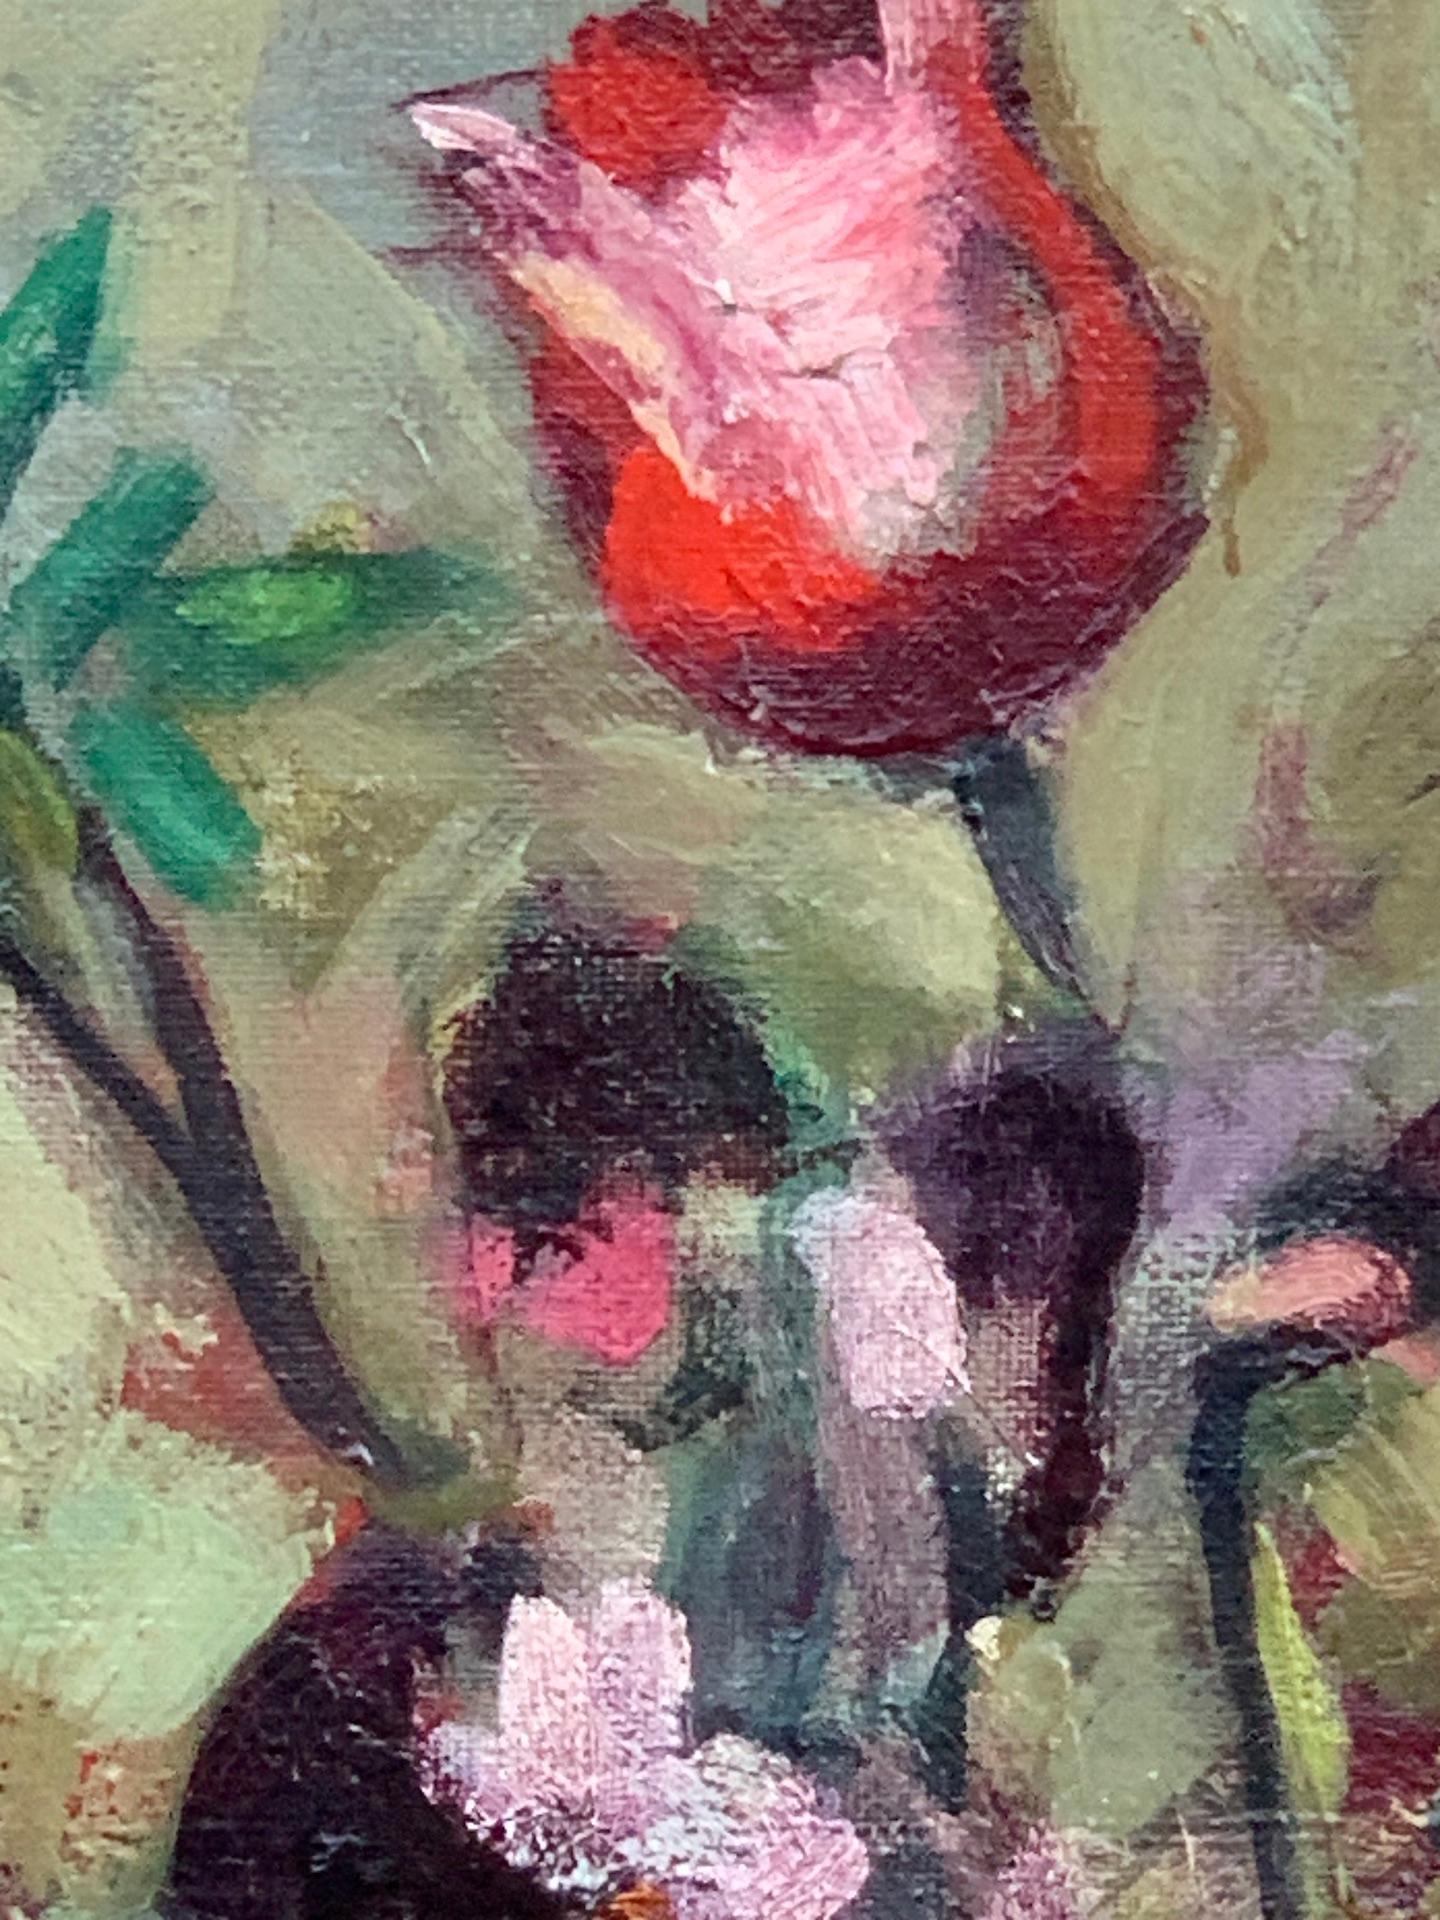 Wunderschönes englisches Stilleben aus den 1930er Jahren mit Tulpen und anderen roten Blumen in einer Vase. 

Die 1930er Jahre waren eine Zeit großer künstlerischer Experimente, und viele Künstler erkundeten in ihren Werken neue Techniken und Stile.